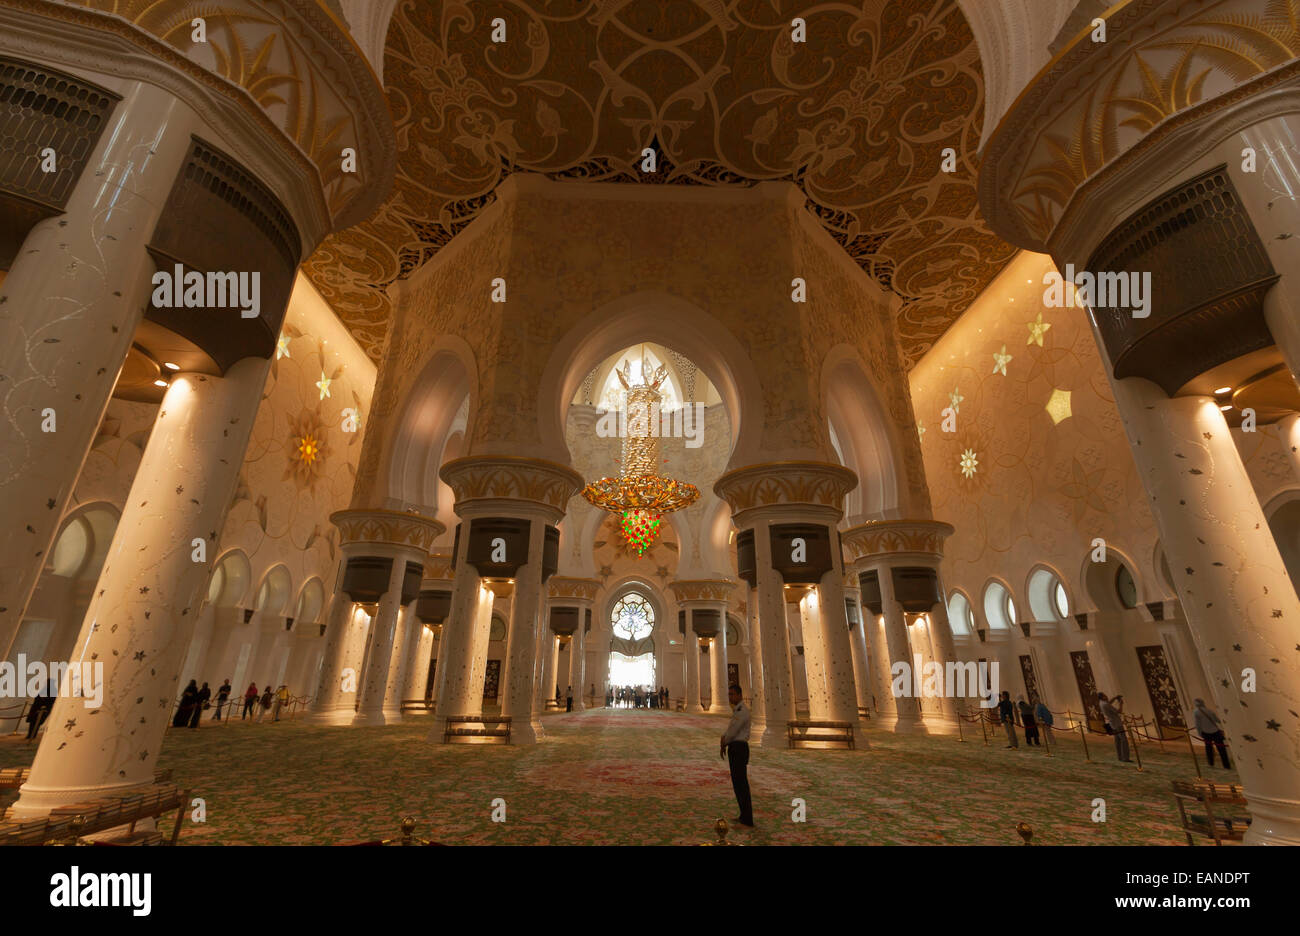 Sheikh Zayed Grand Mosque, Abu Dhabi, Vereinigte Arabische Emirate. Innenraum der Haupthalle Gebet. Stockfoto